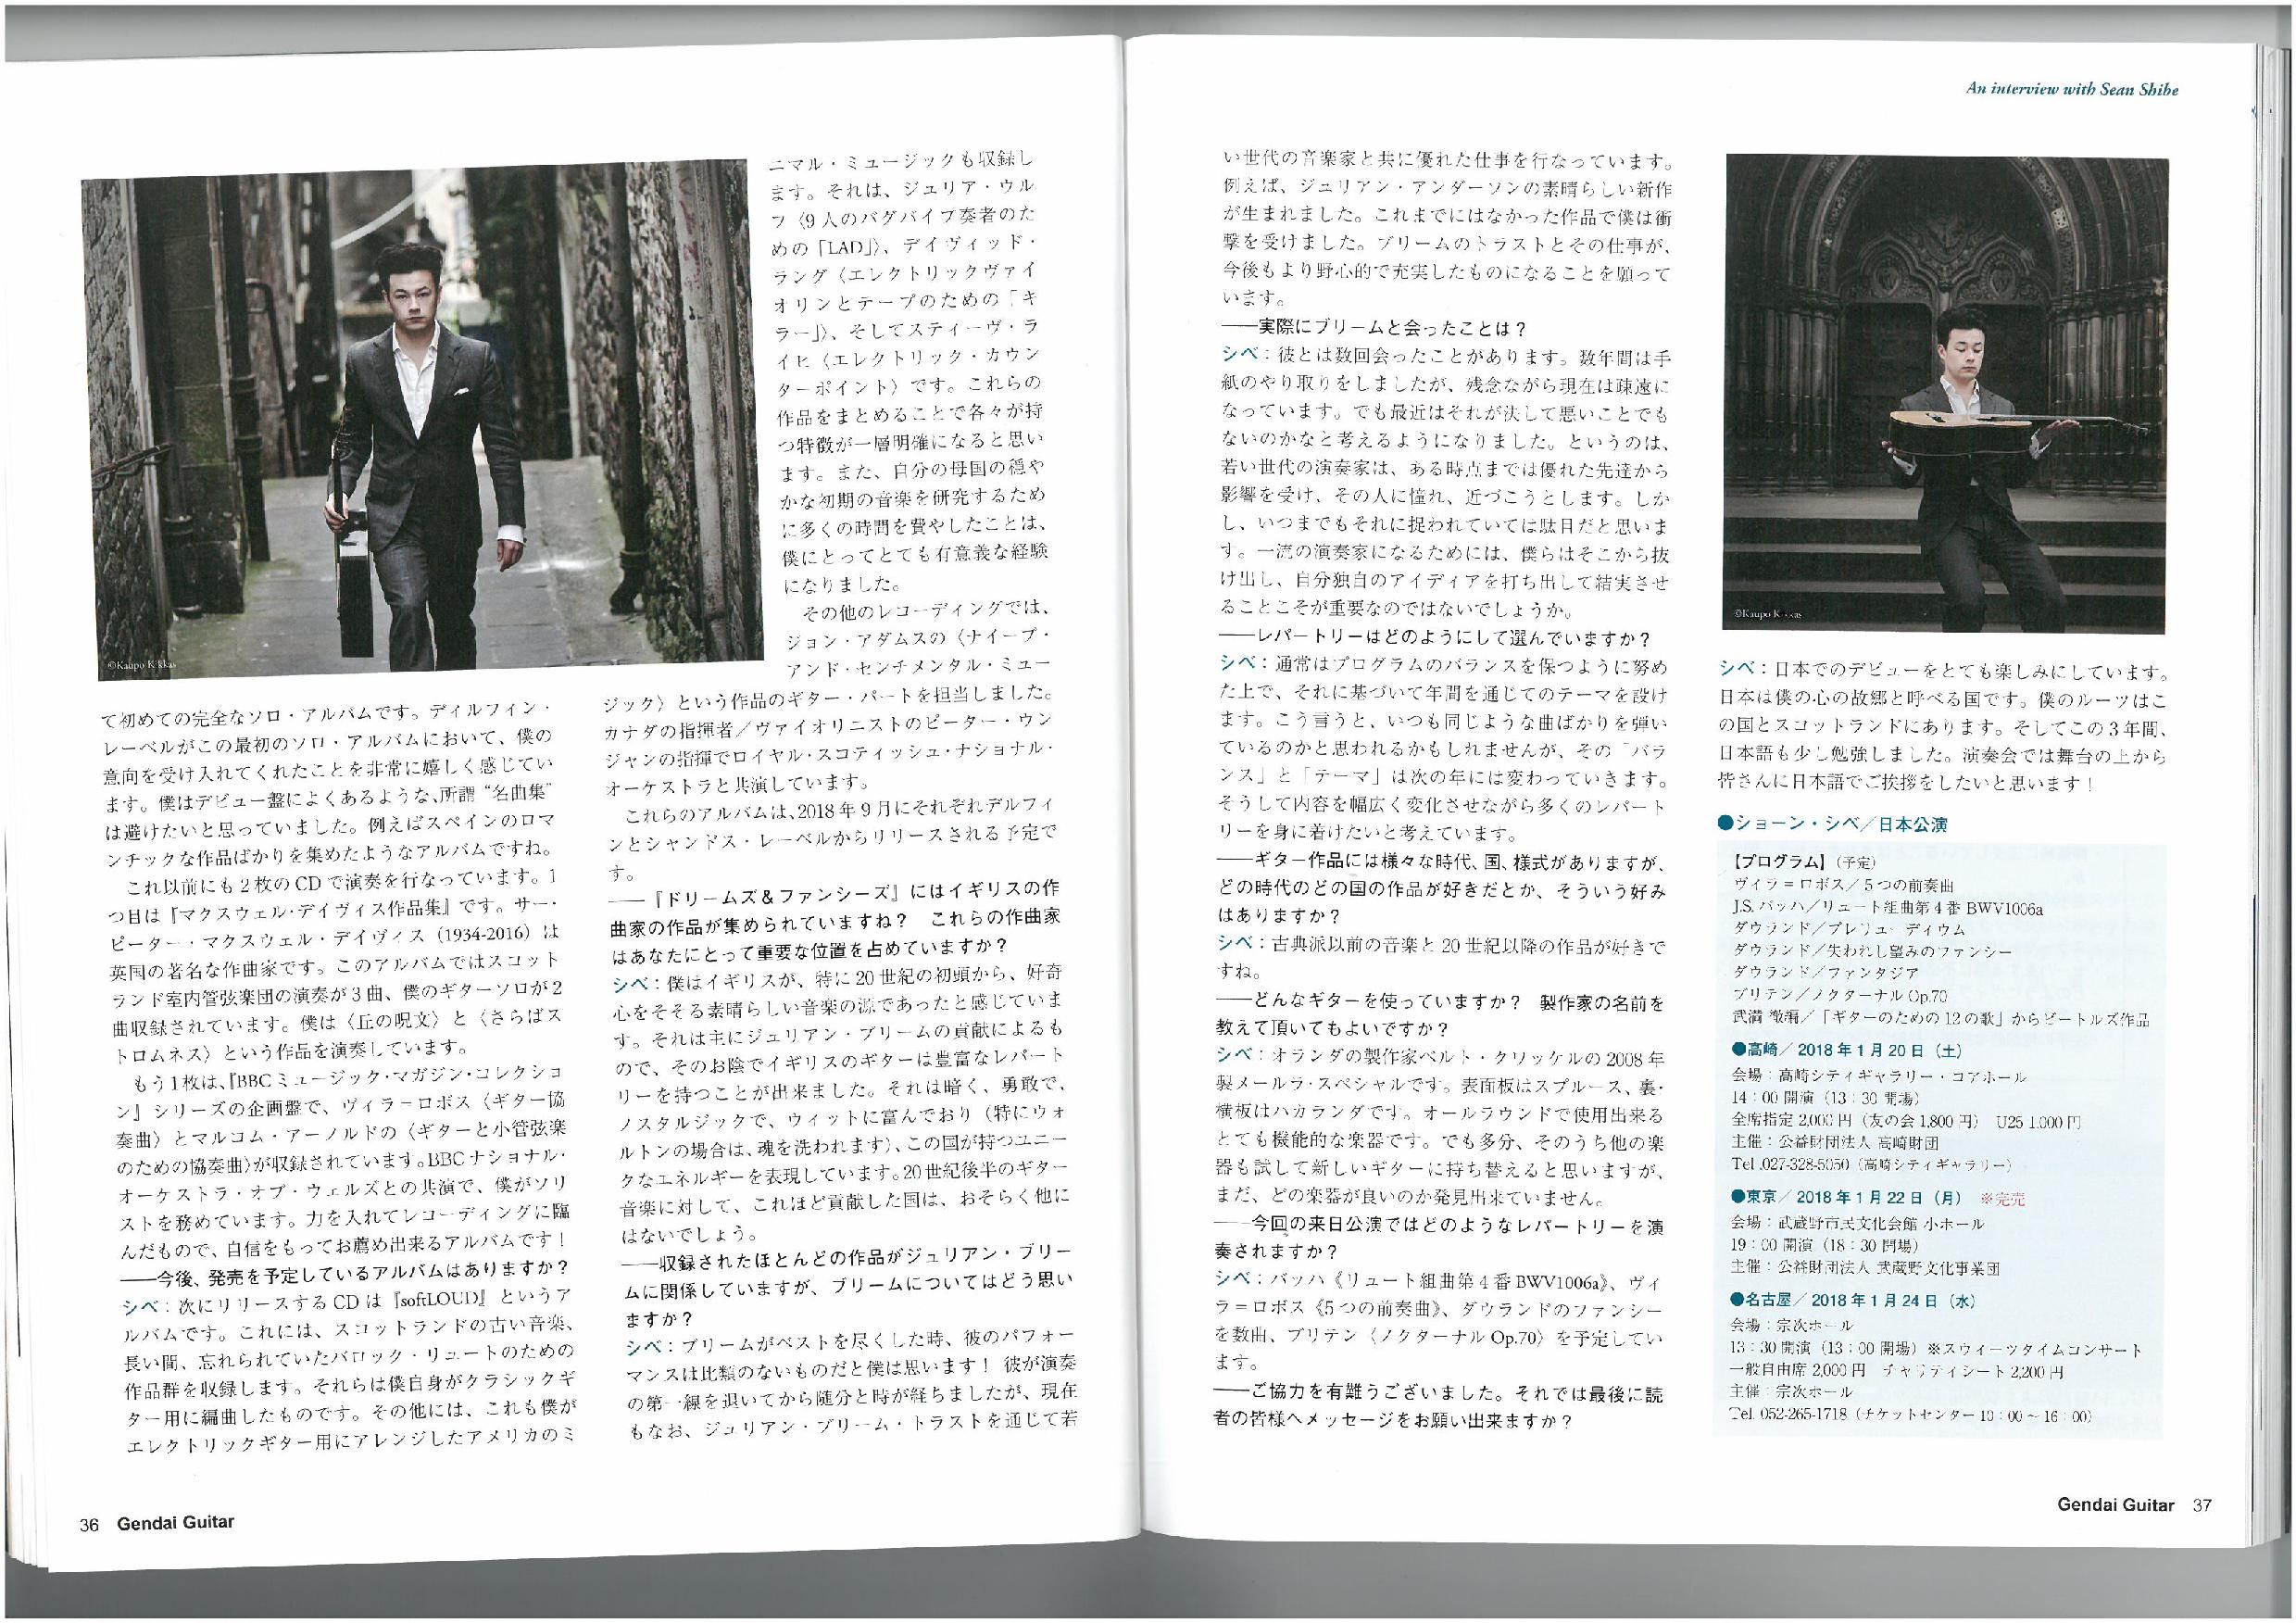 Sean Japan Article Part 2-page-001